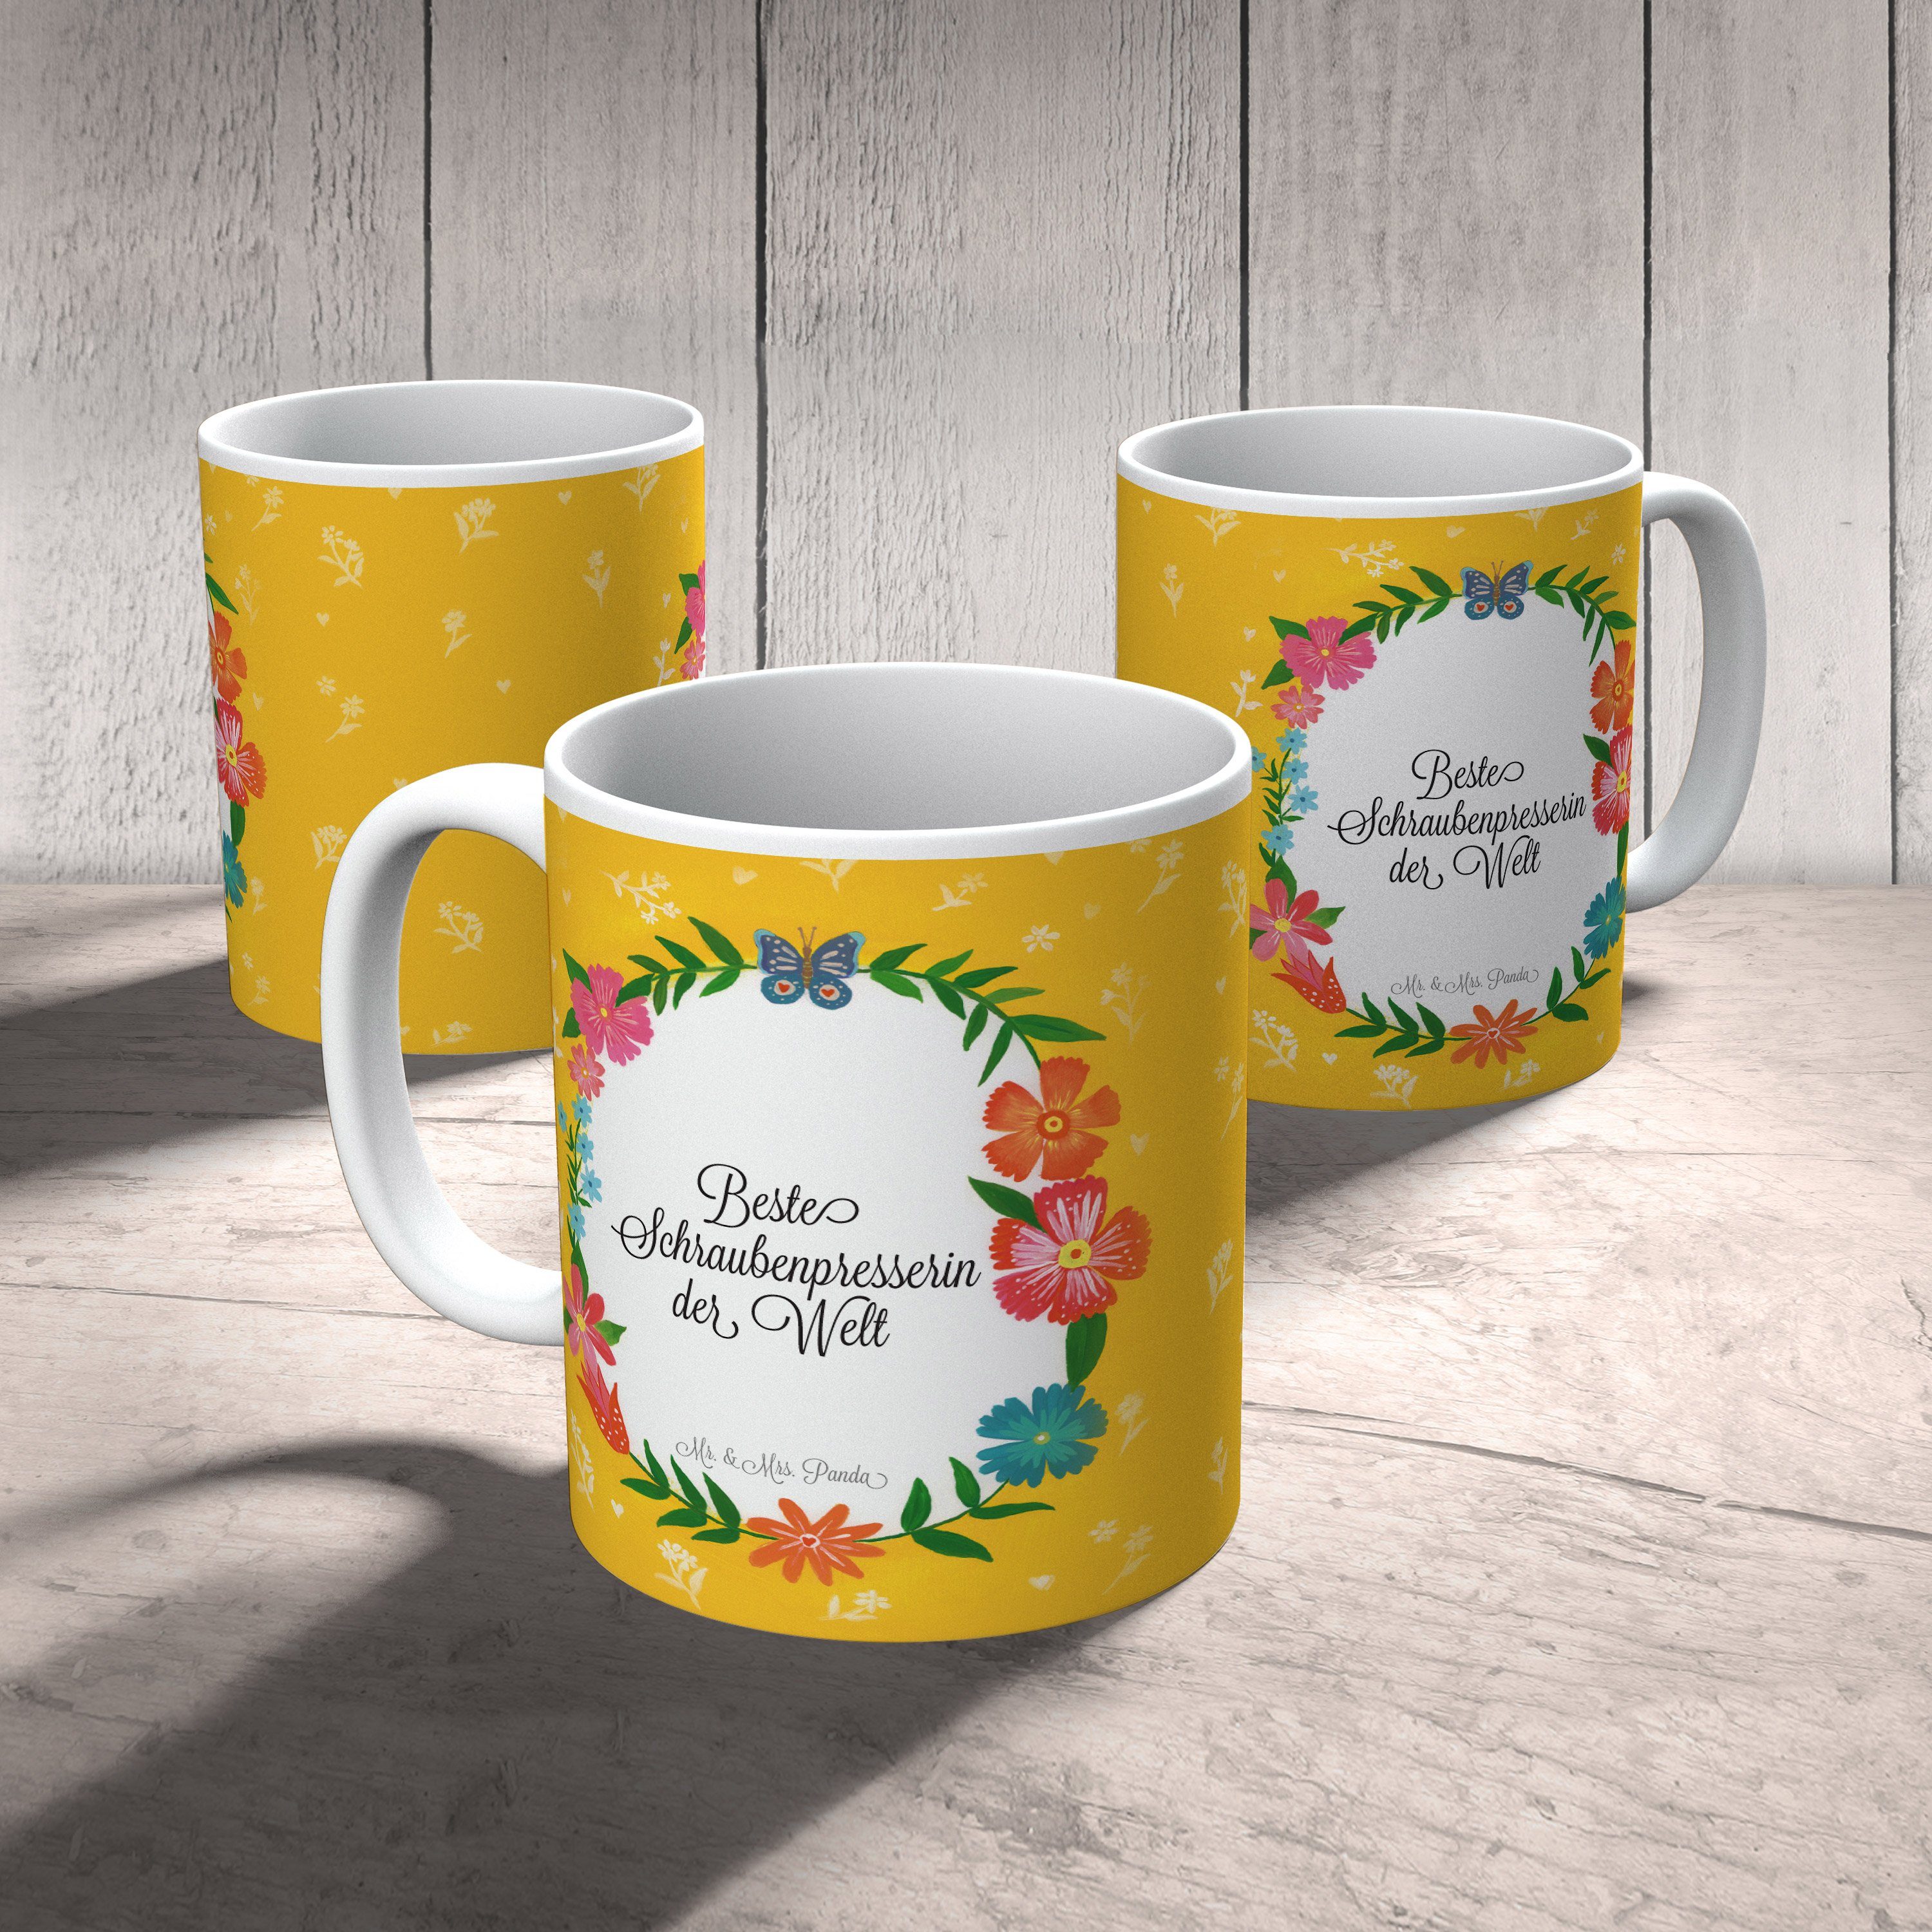 Mr. Schraubenpresserin Tas, Sprüche, Geschenk, - Rente, & Tasse Keramik Tasse Kaffeetasse, Mrs. Panda